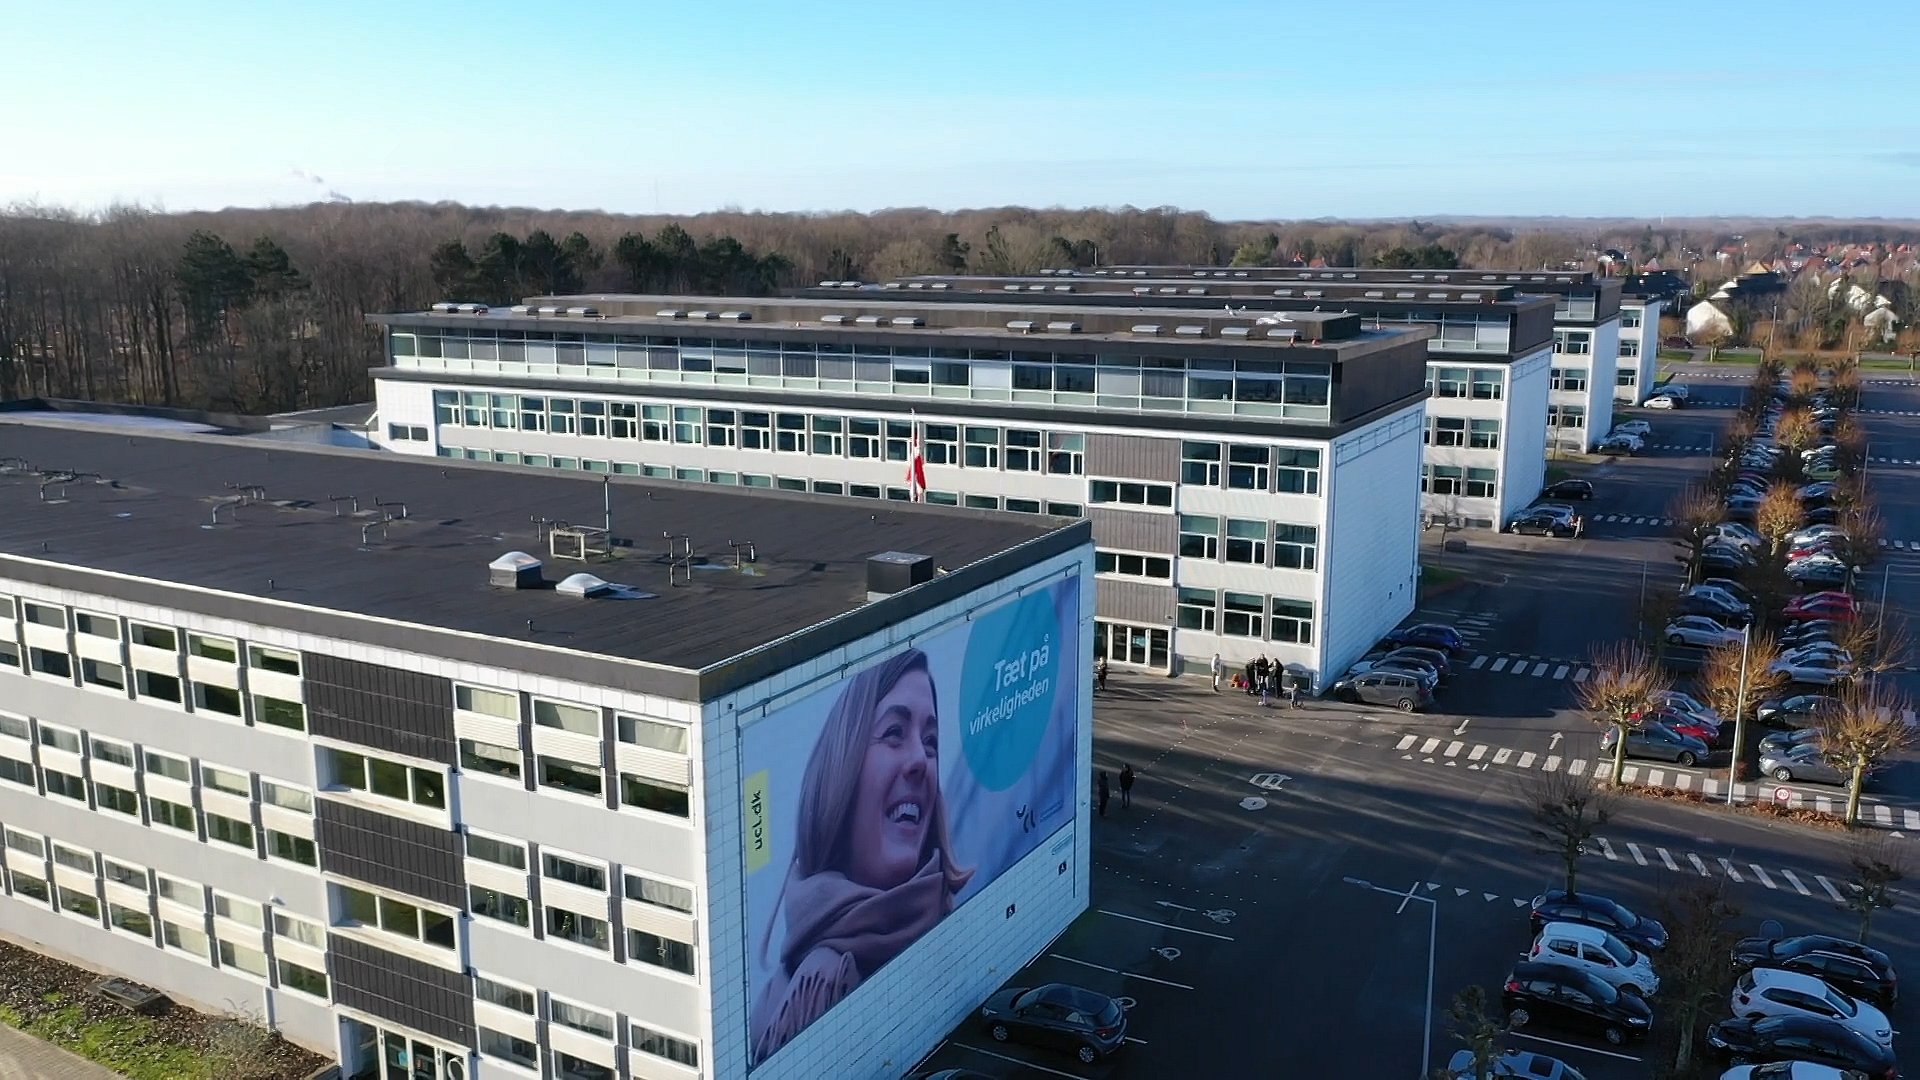 UCL stort antal studiepladser i Odense TV2 Fyn